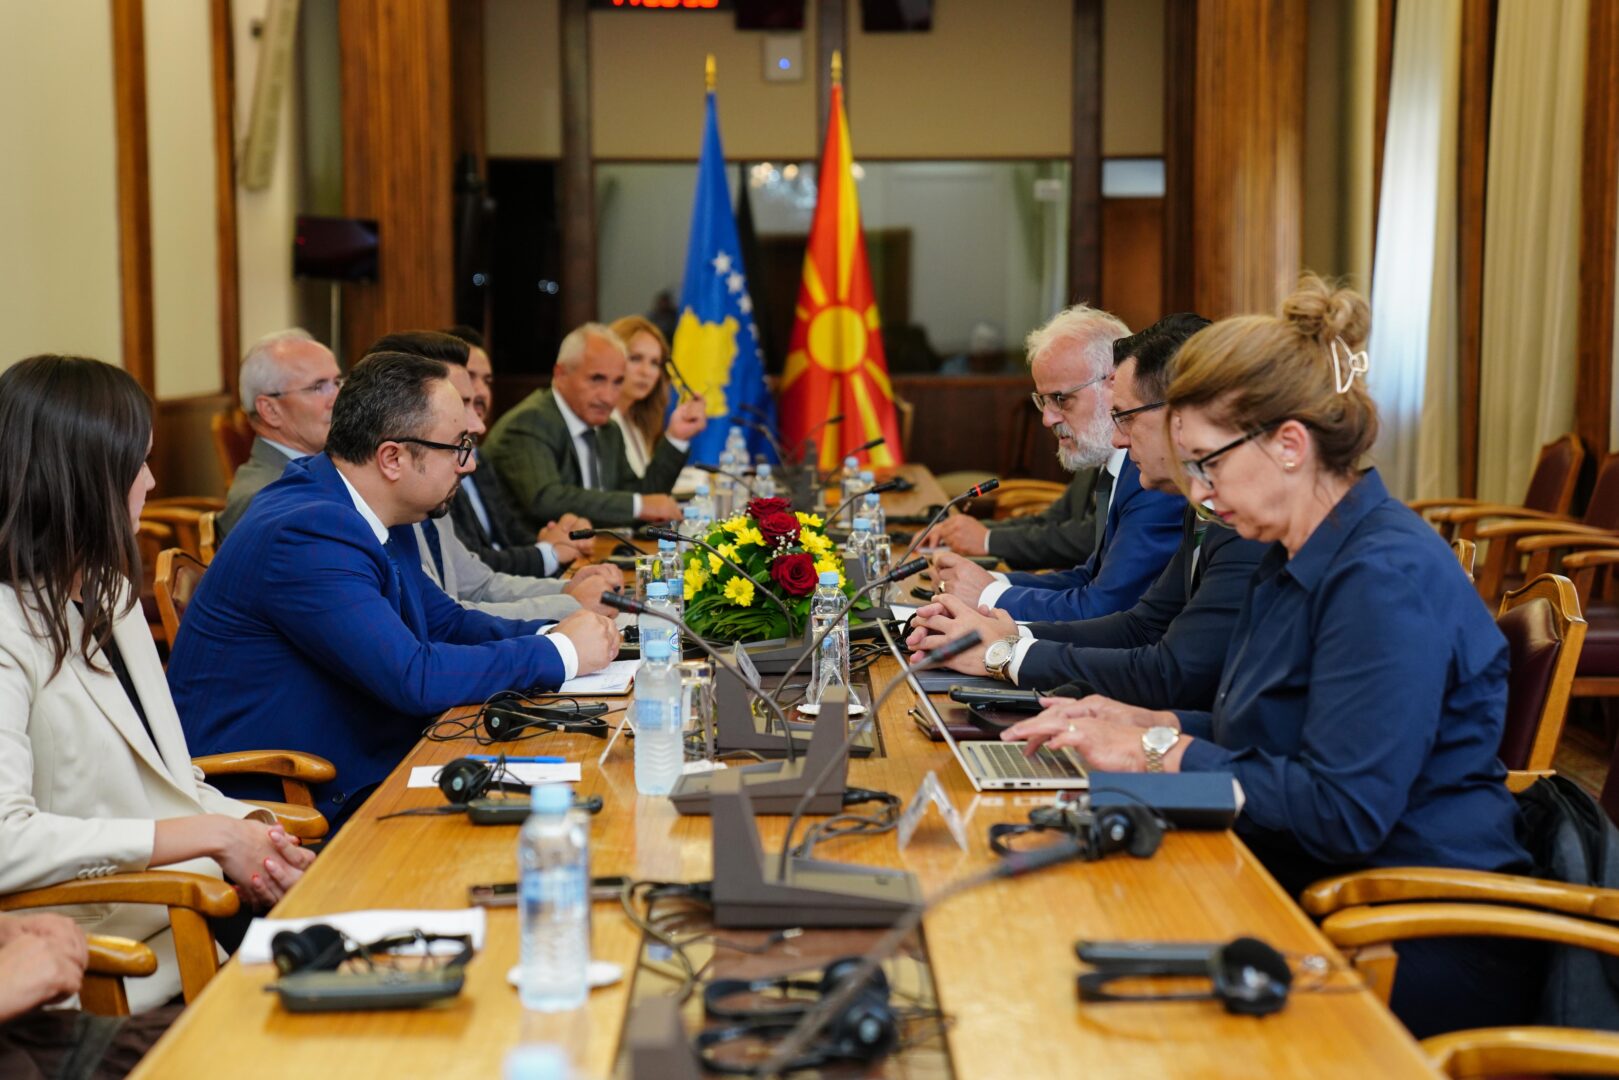 Џафери на средба со делегација од Собранието на Косово: во фокусот, етичкиот реформски процес